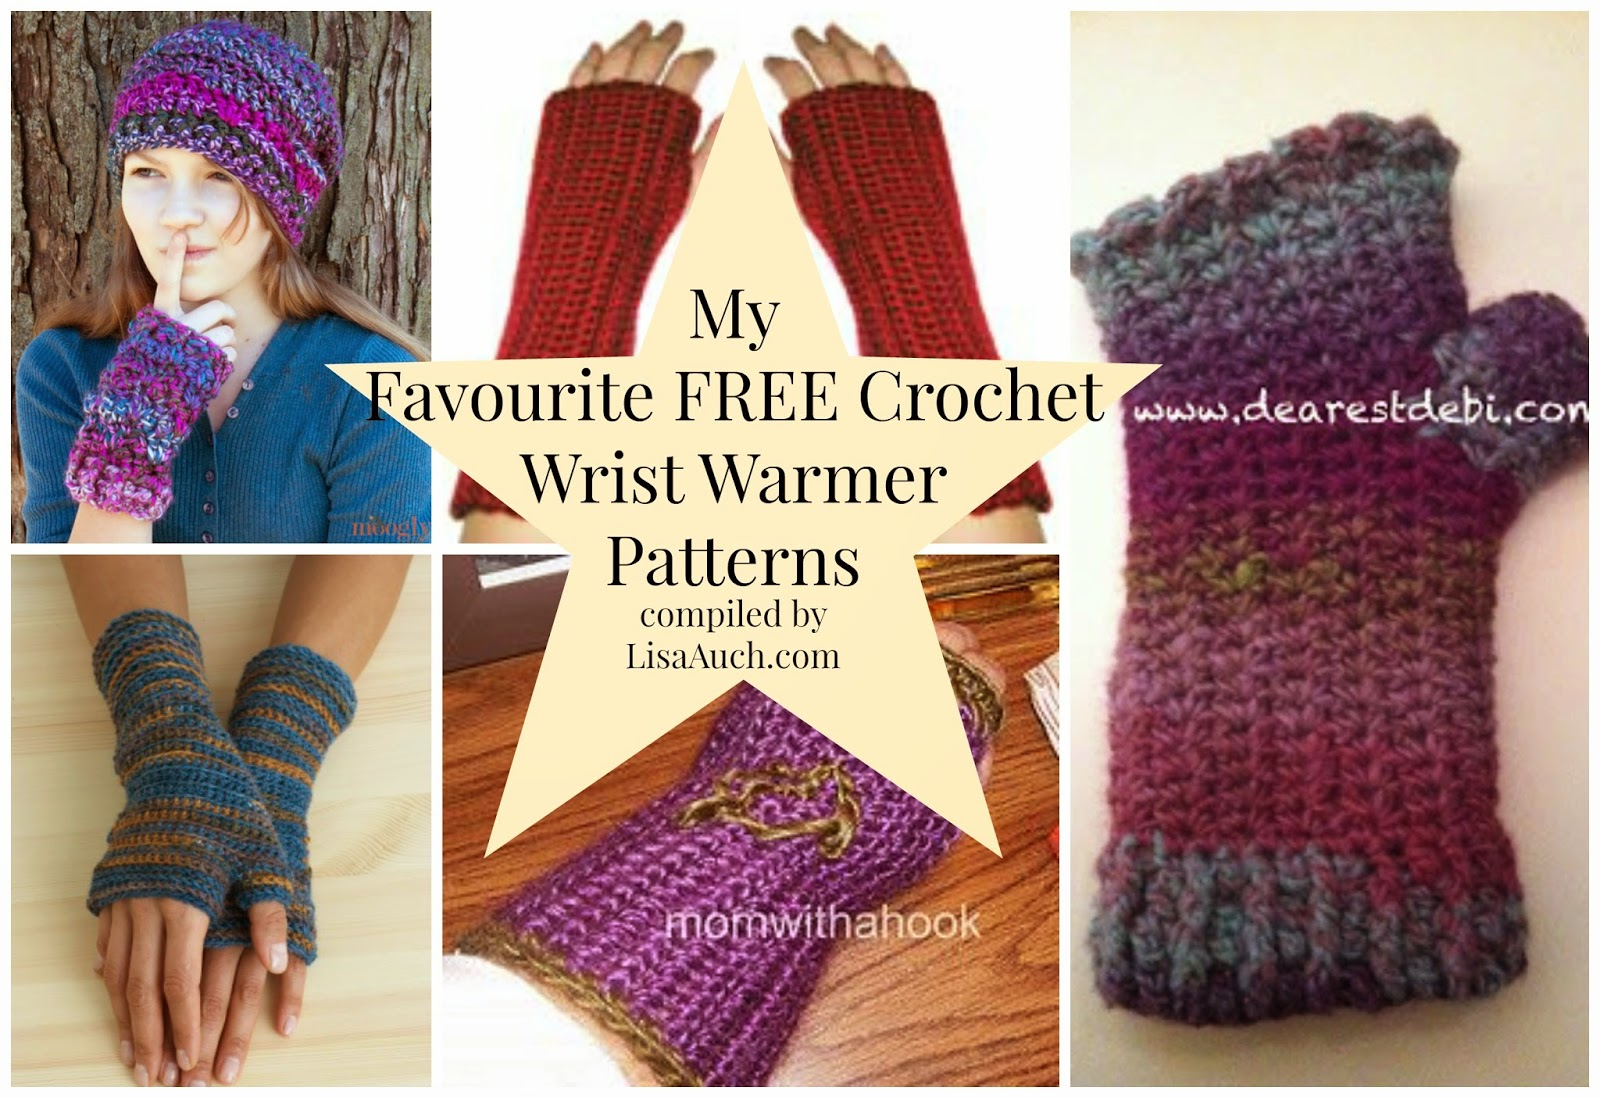 Crochet Wrist Warmers Free Pattern Free Crochet Patterns And Designs Lisaauch Free Crochet Patterns